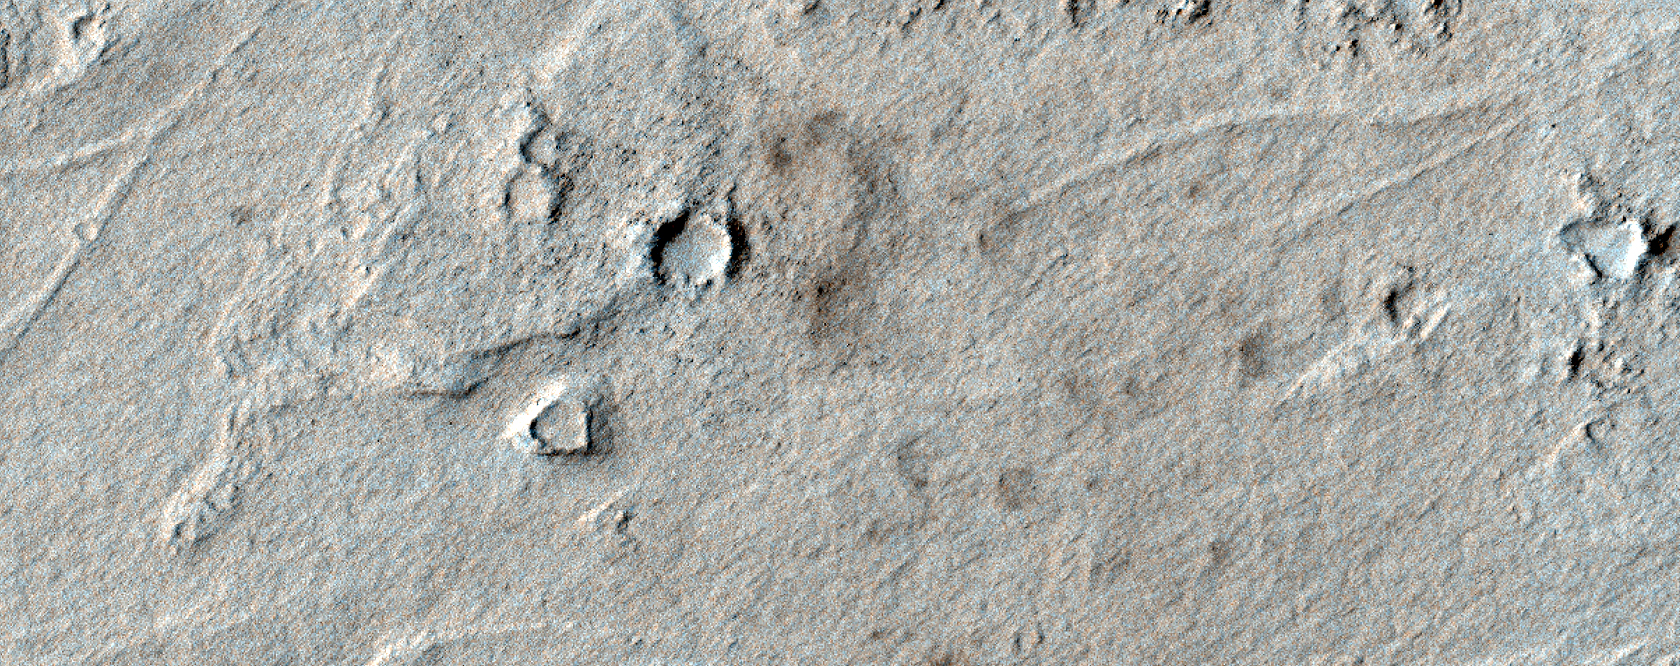 Obserwacje nowego krateru uderzeniowego